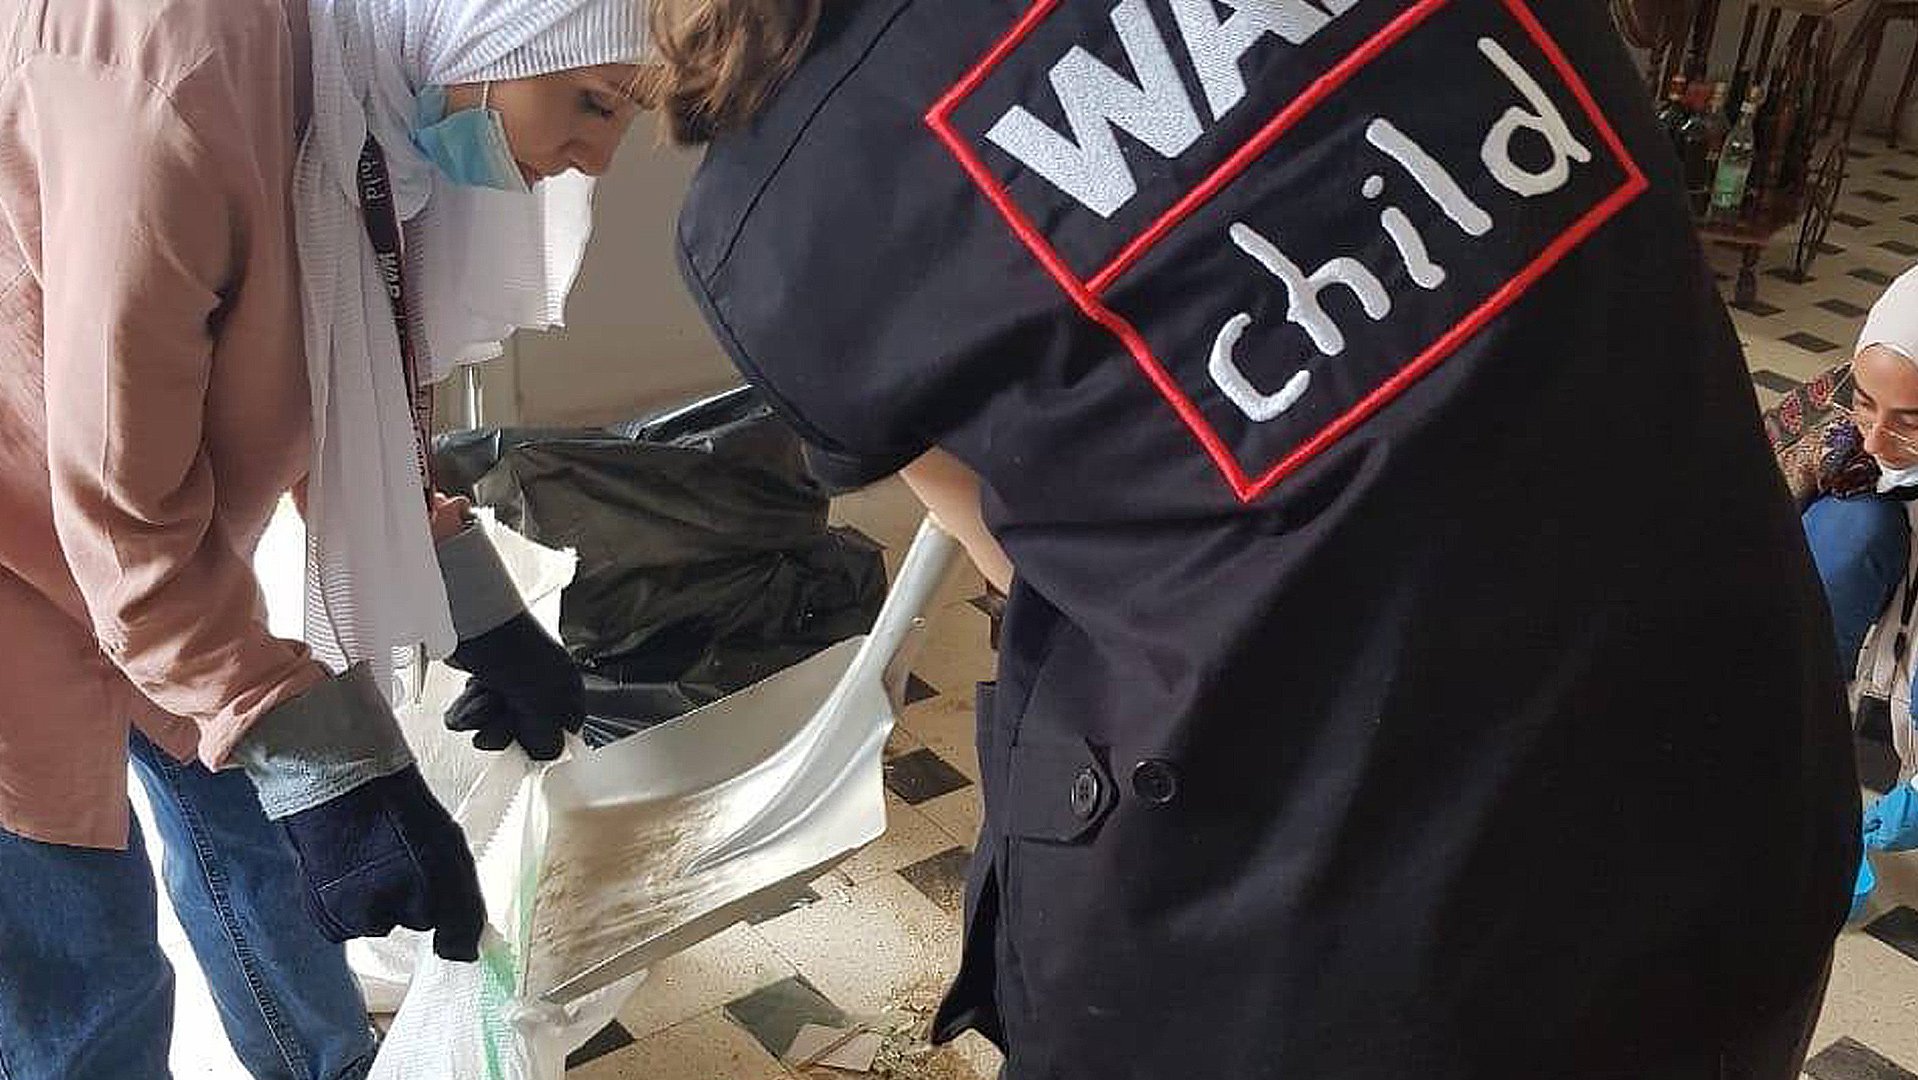 War Child team helpt bij schoonmaakactie in Beiroet, Libanon na explosies